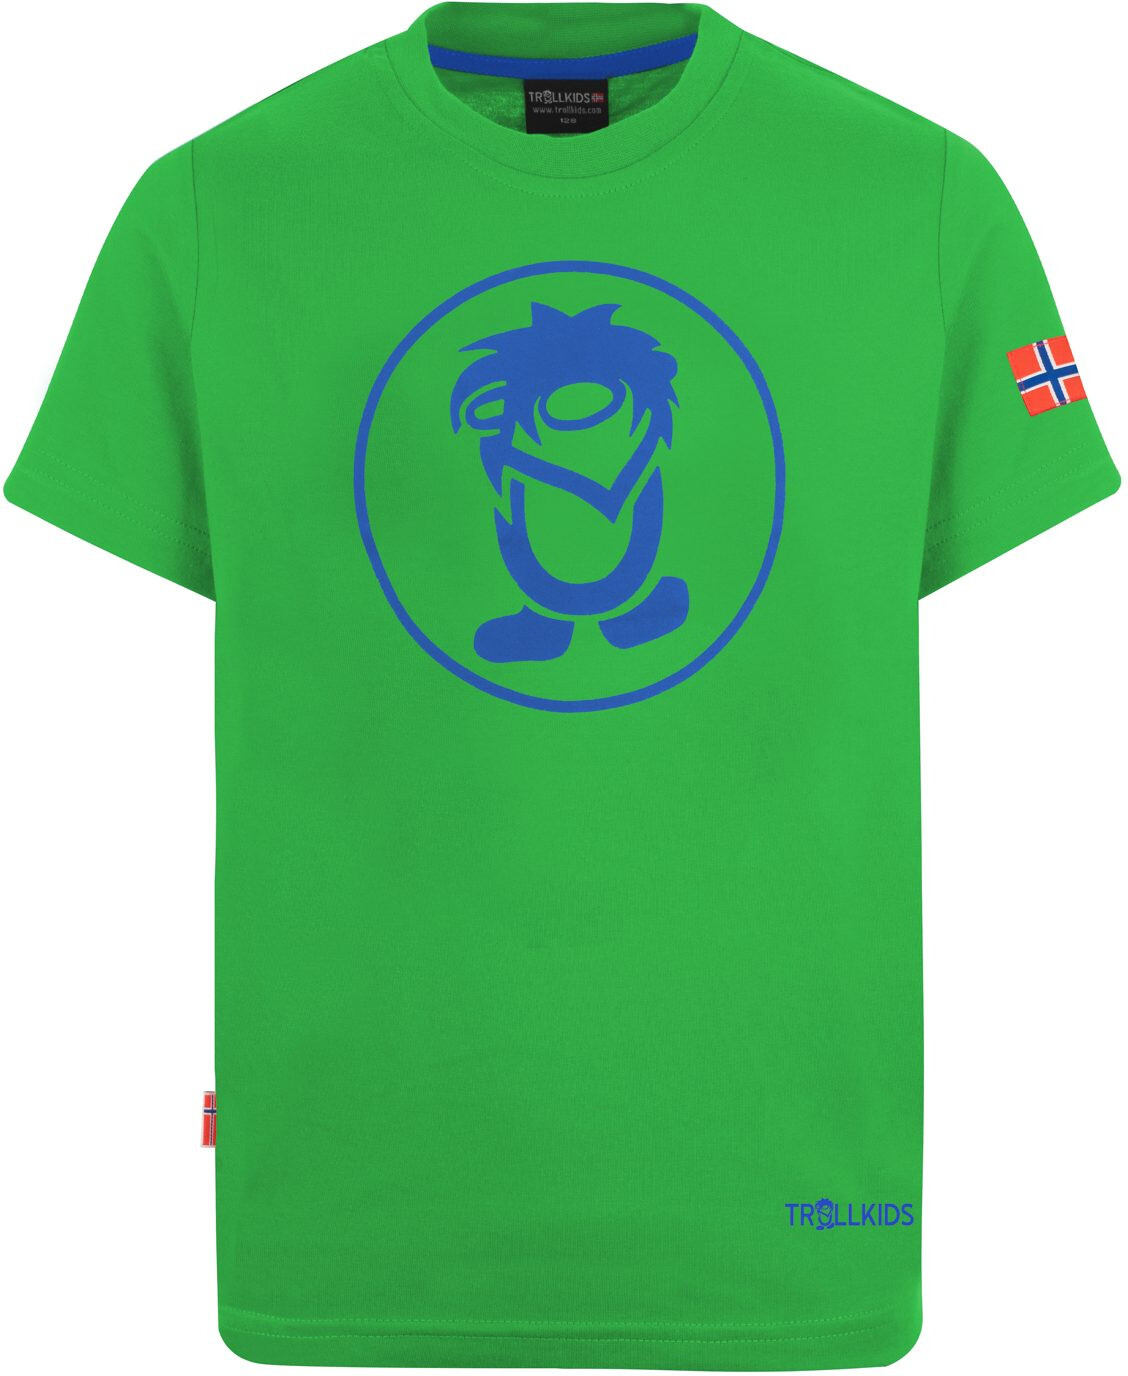 TROLLKIDS Troll T-Shirt Kinder grün